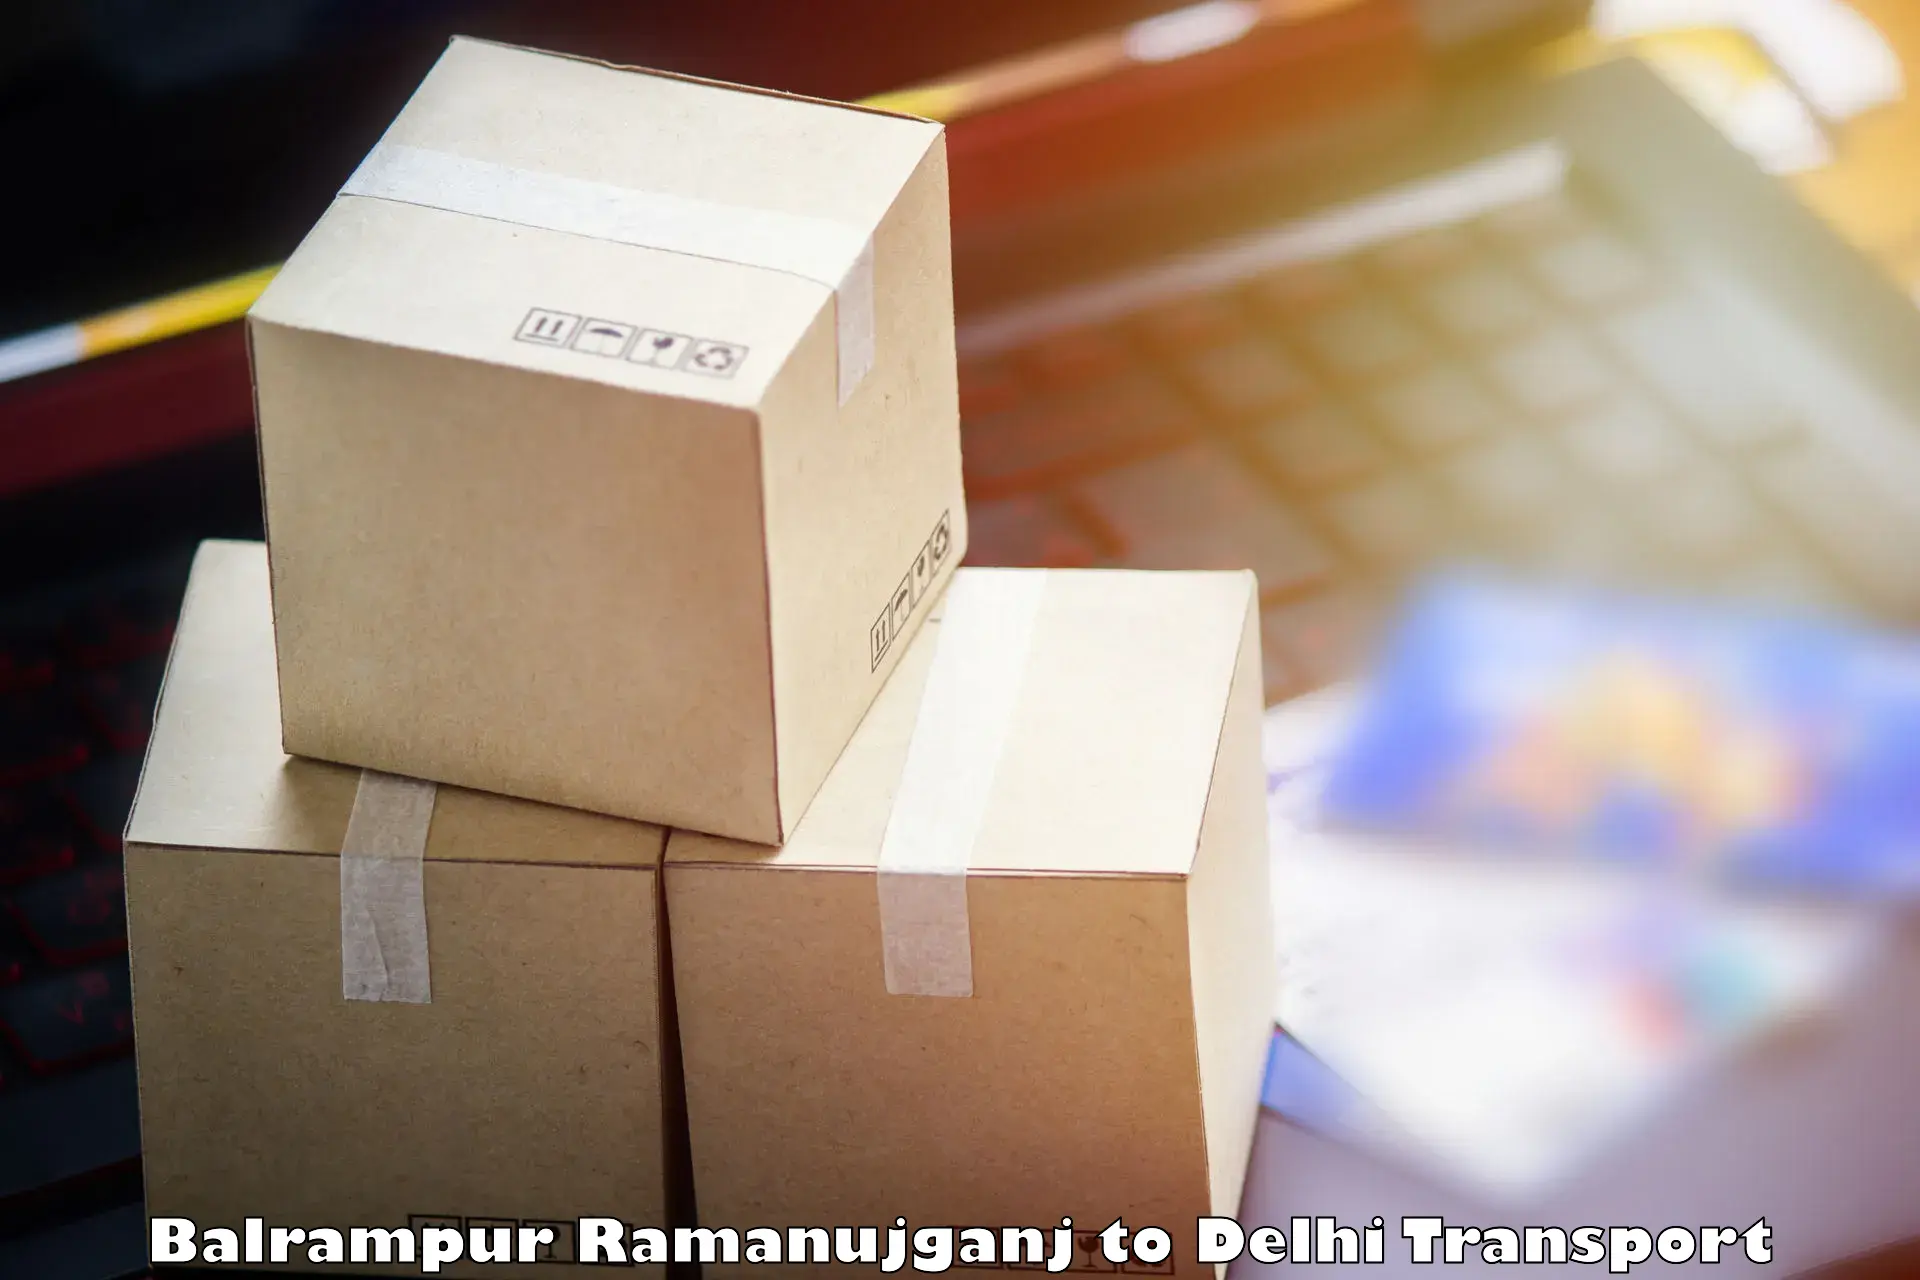 Luggage transport services Balrampur Ramanujganj to NCR